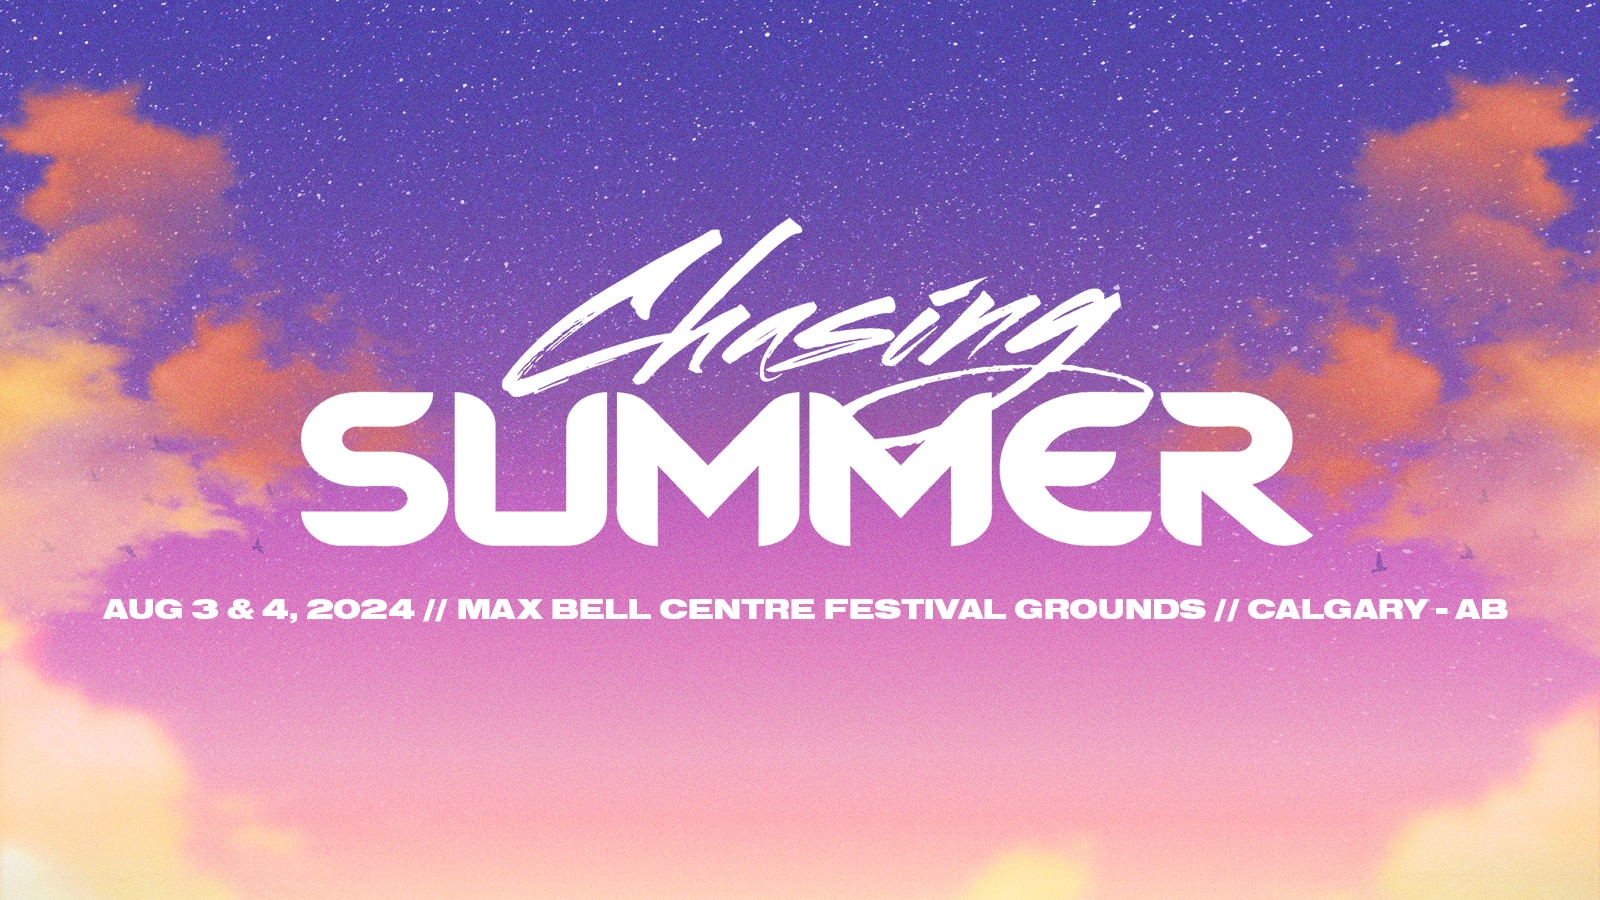 Chasing Summer Festival Aug 3 & 4, 2024